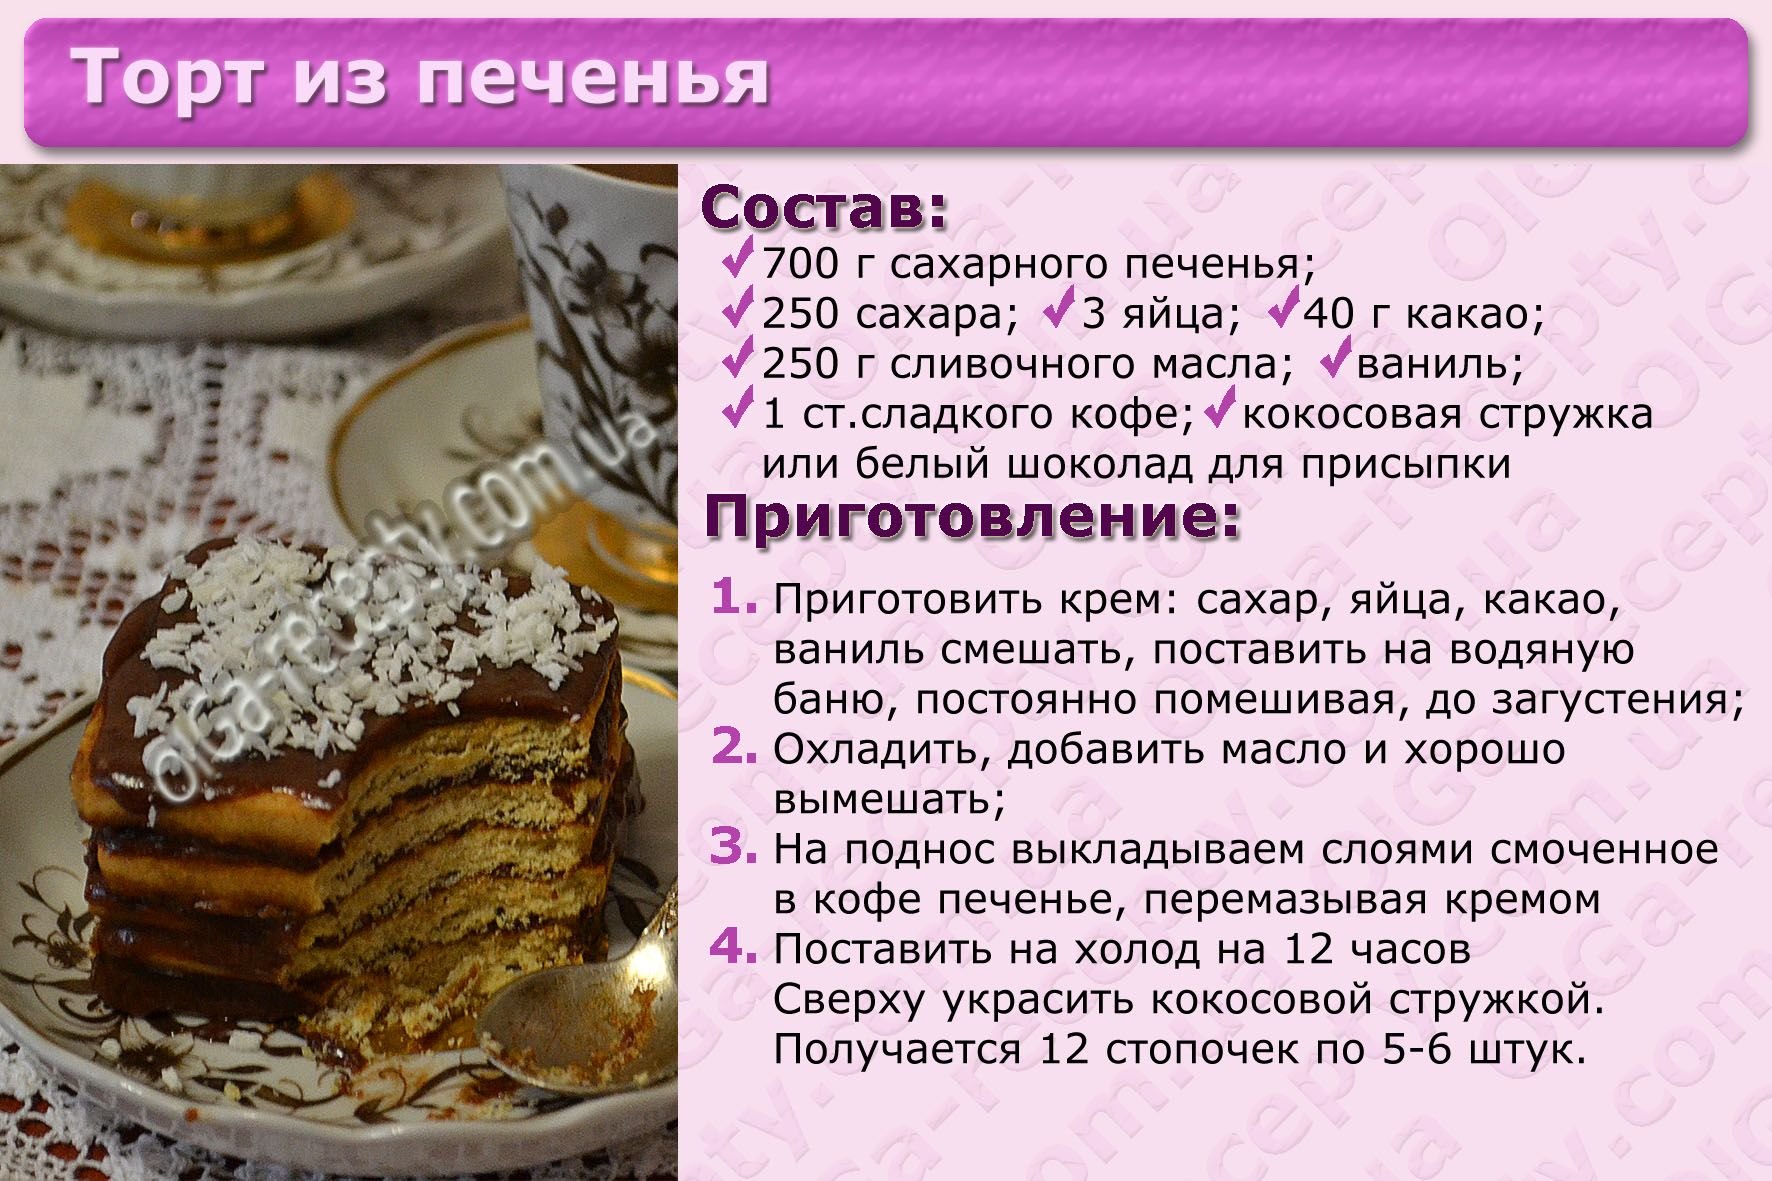 Рецепты торта ру. Картинки с рецептами тортов. Несложные рецепты тортов с картинкой. Рецепт торта картинки с описанием. Приготовление торта картинки.